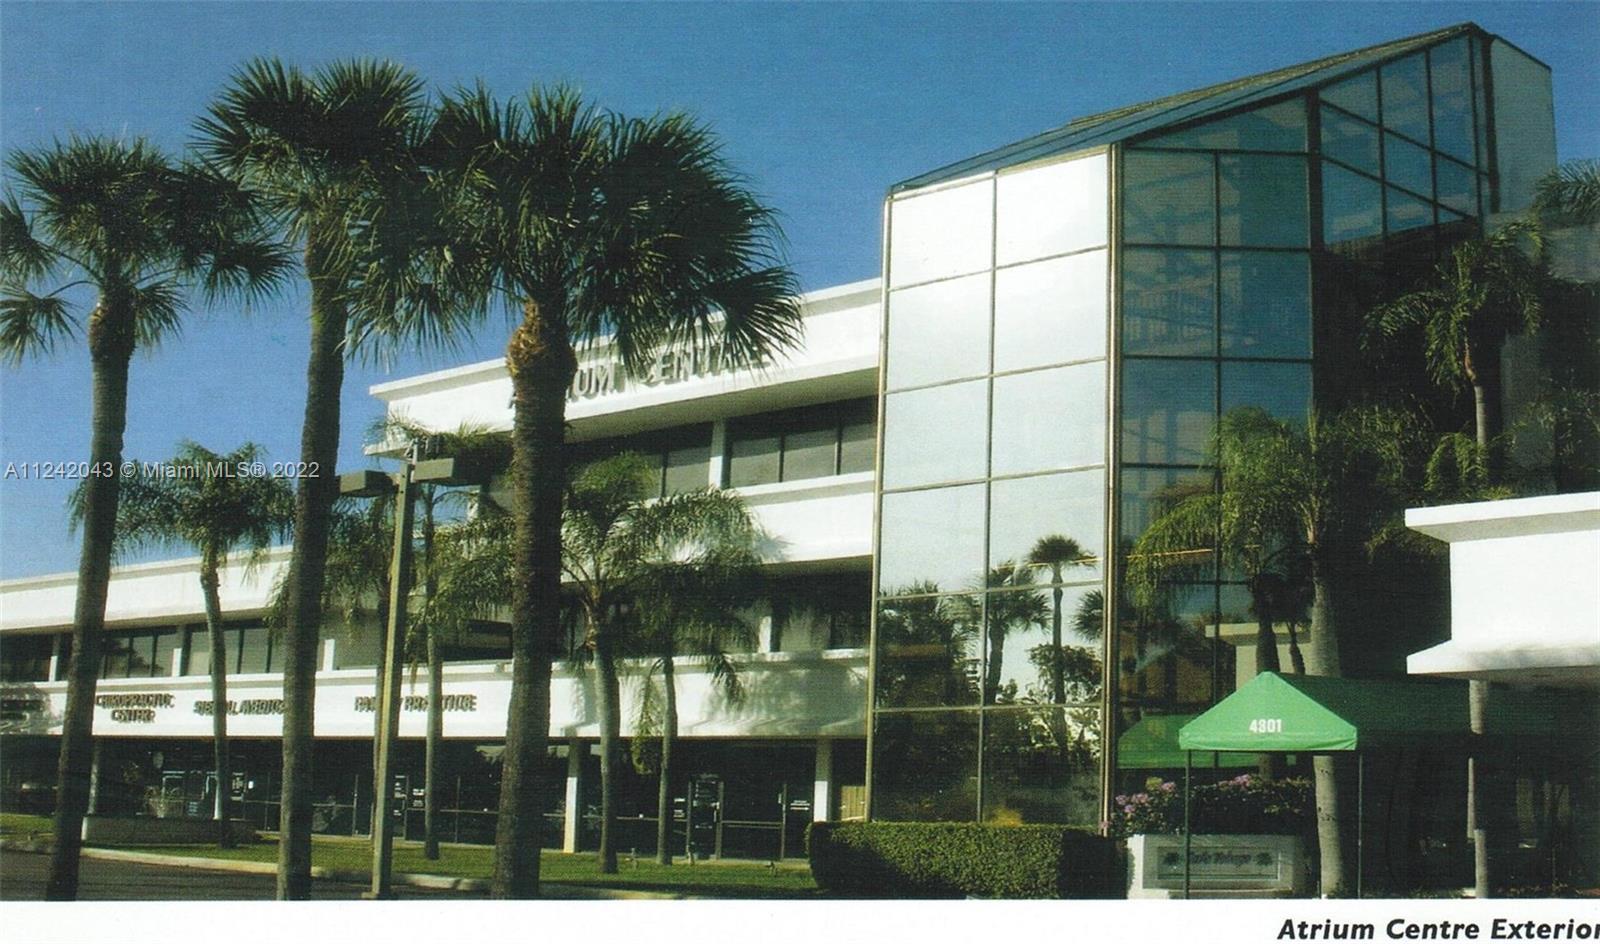 Photo of 4801 S University Dr in Davie, FL